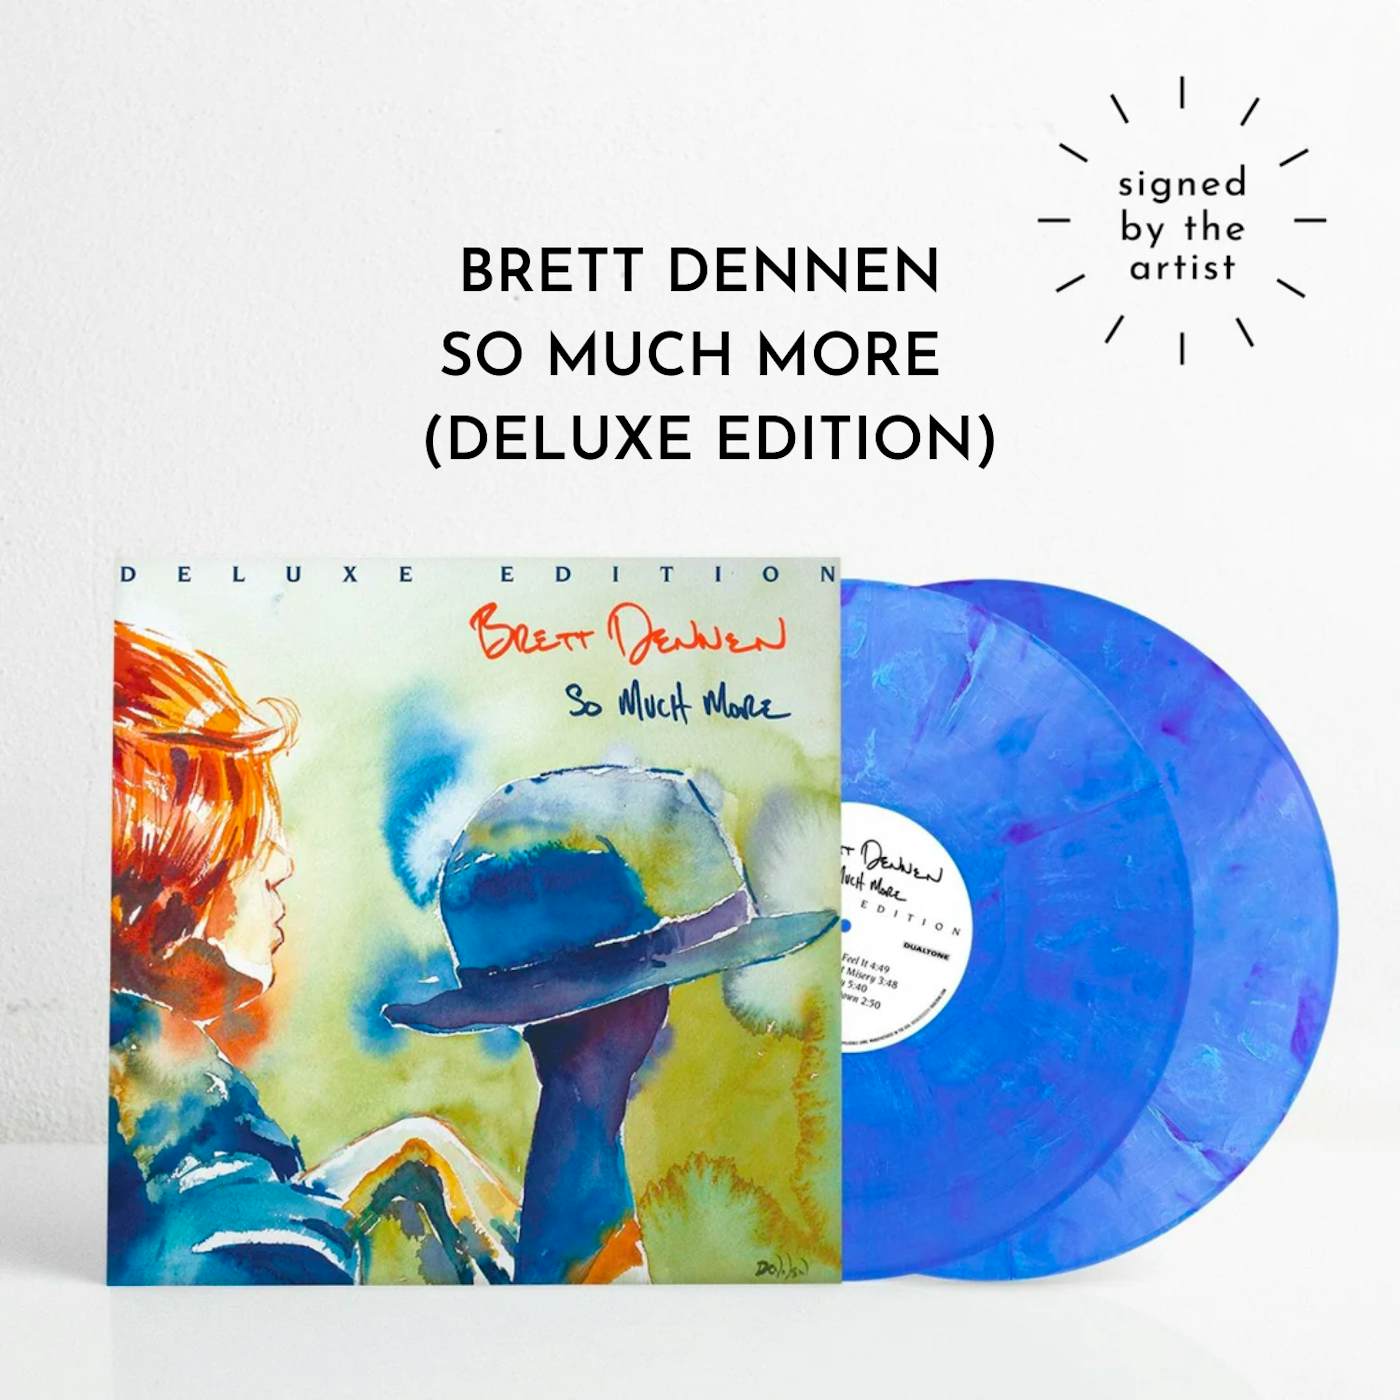 Brett Dennen So Much More - Deluxe Edition (SIGNED Ltd. Edition Vinyl)